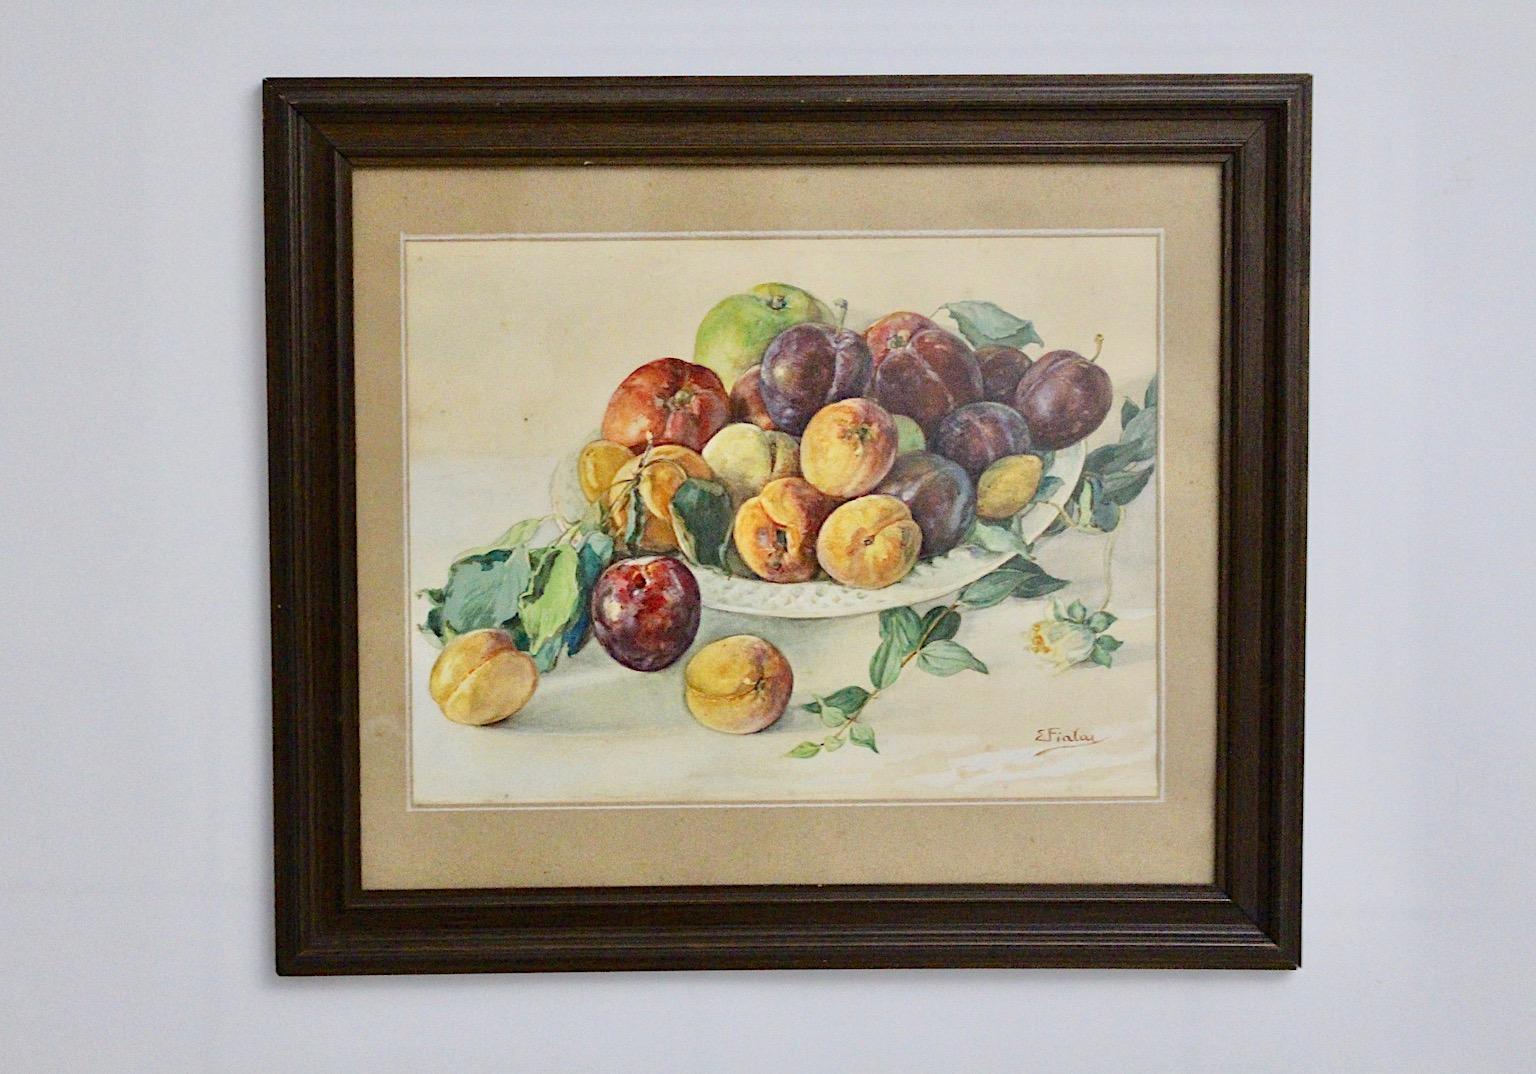 Un tableau avec le motif des fruits dans un bol peint, qui a été réalisé avec des aquarelles par Emil Fiala.
Emil Fiala (1869-1960) a été membre du Künstlerbund autrichien, anciennement Hagenbund, de 1915 à 1937.
Un simple cadre en bois brun fait